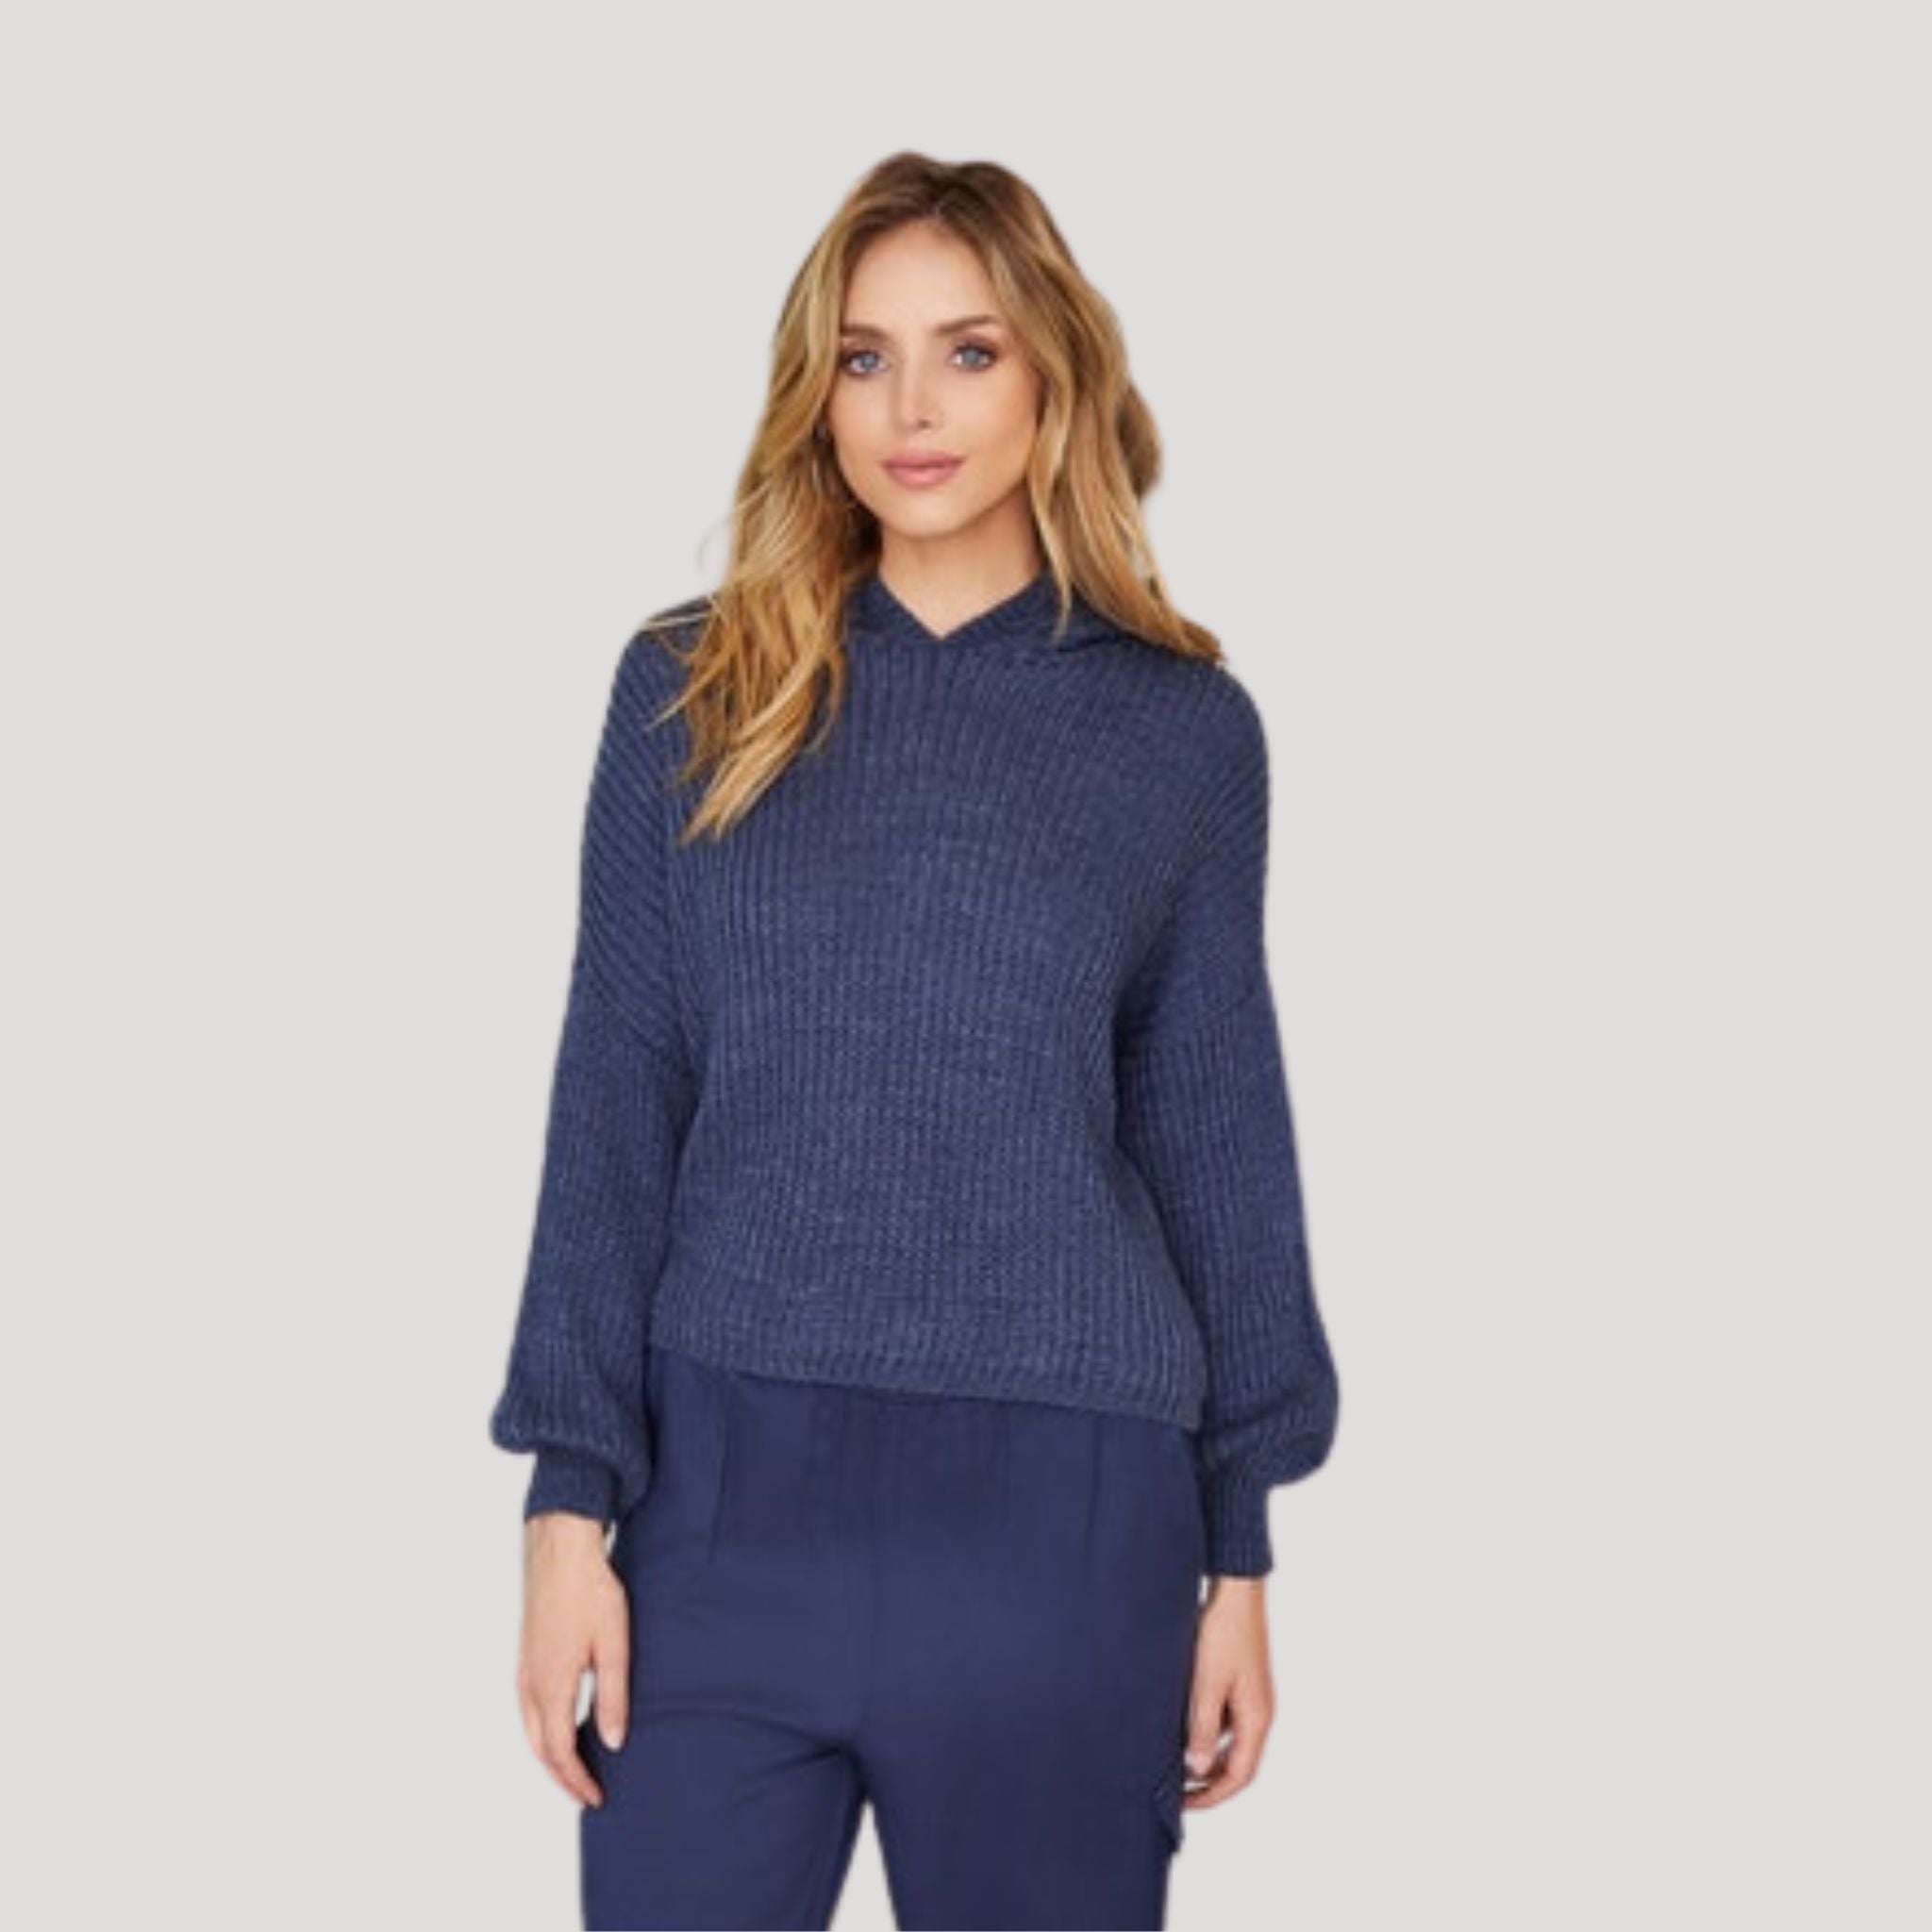 CSS - Ava Hoody Sweater